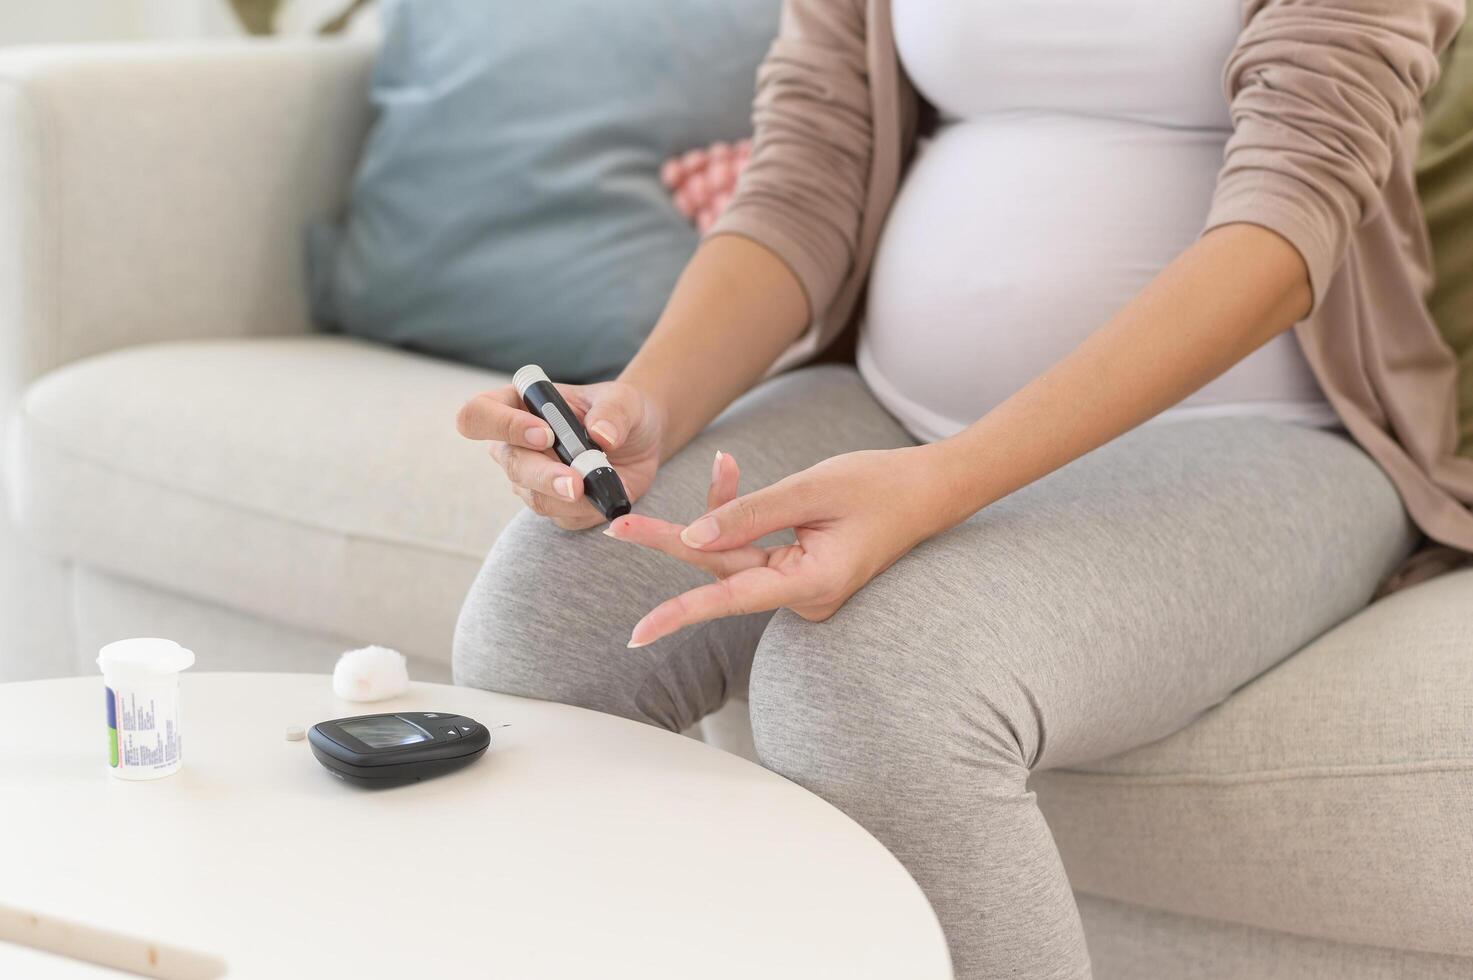 schwanger Frau Überprüfung Blut Zucker Niveau durch mit Digital Glucose Meter, Gesundheit Pflege, Medizin, Diabetes, Glykämie Konzept foto